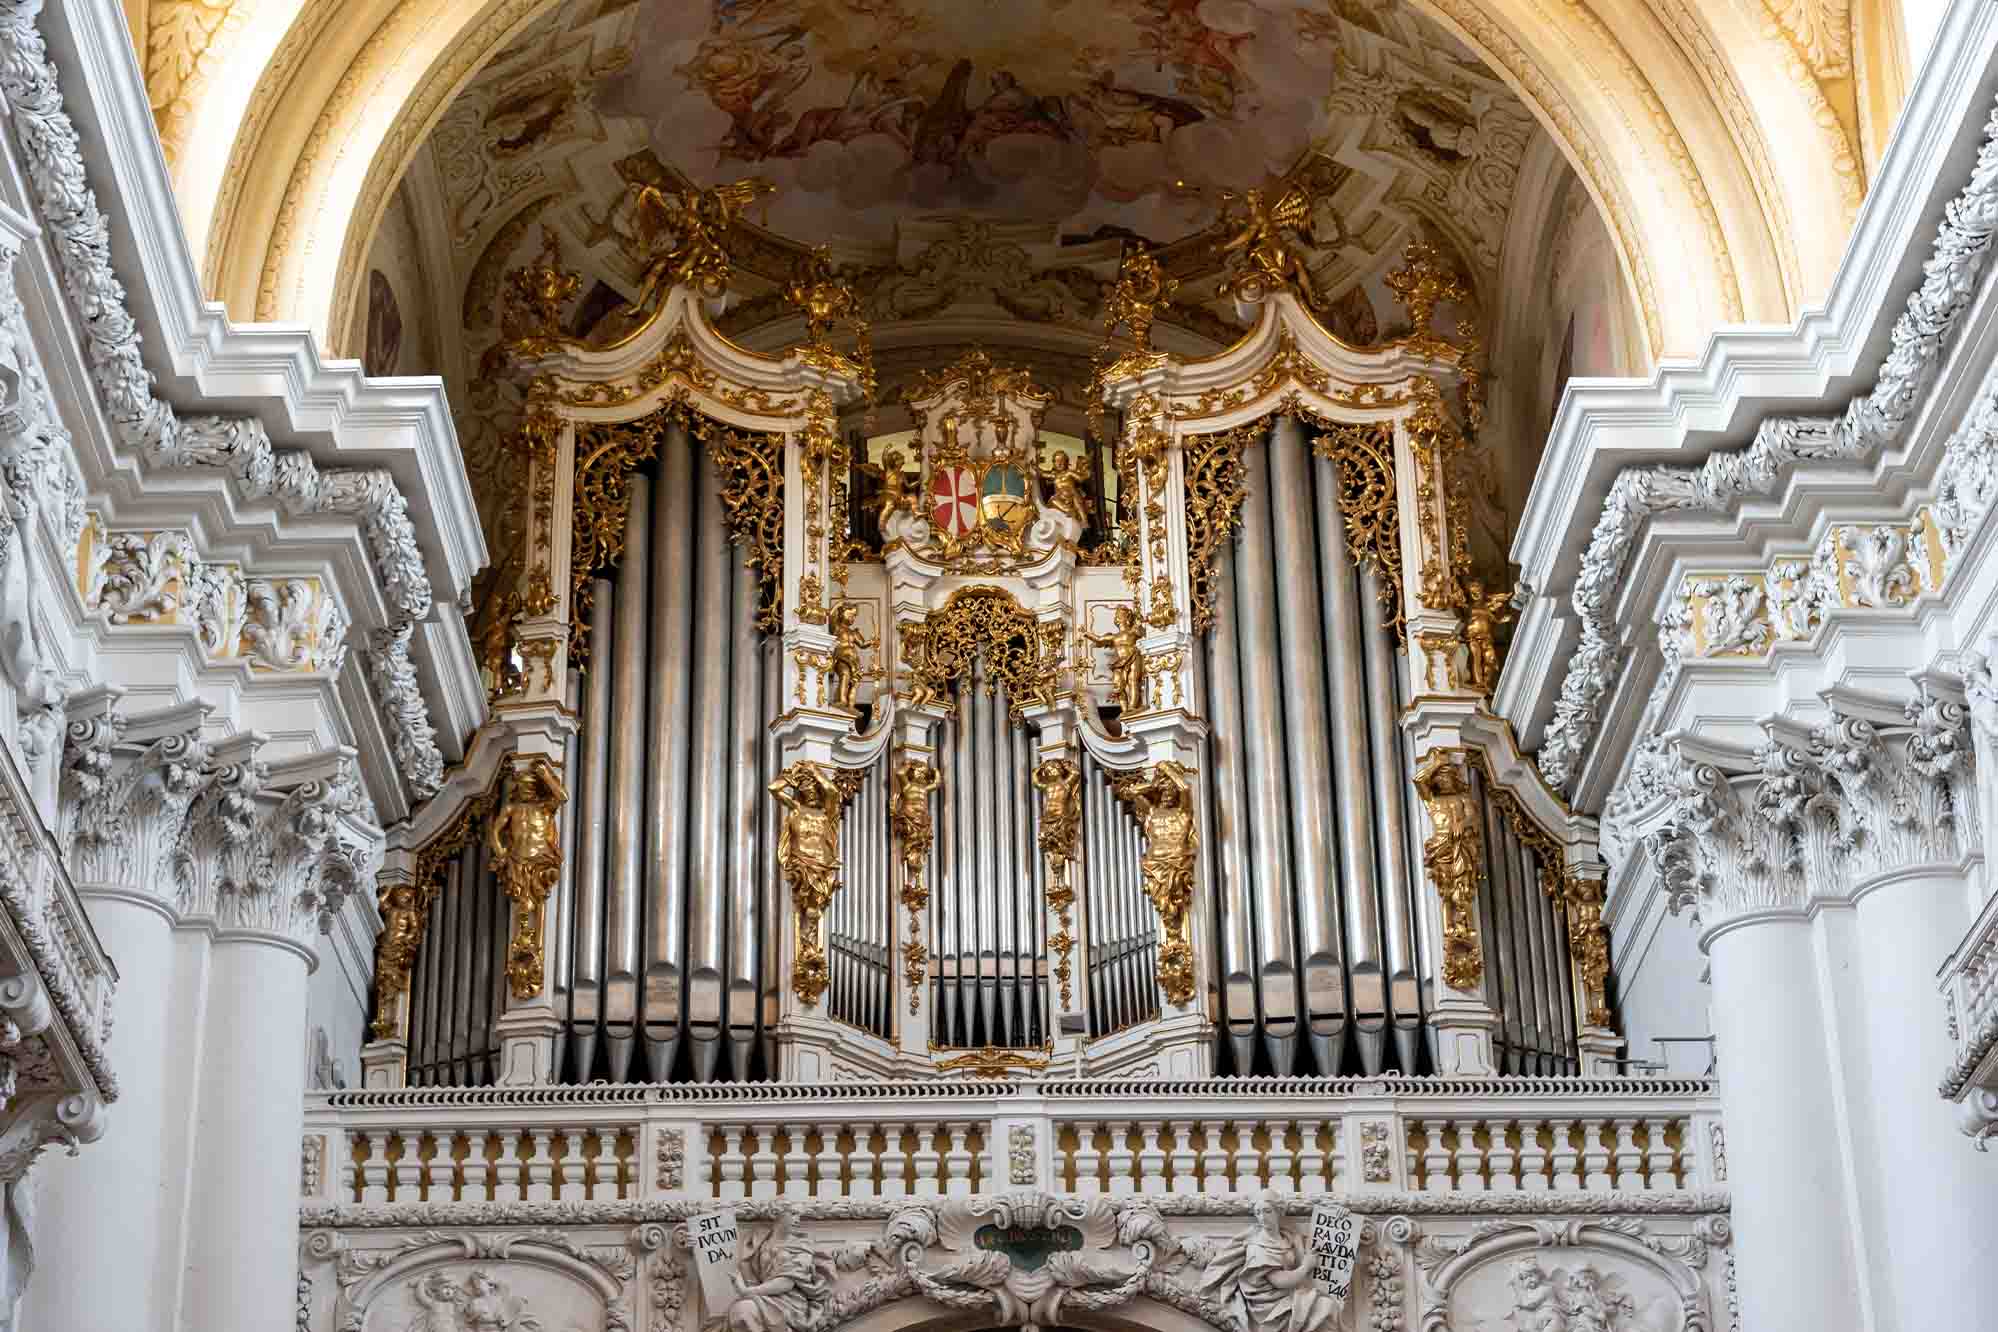 Nhà soạn nhạc lừng danh người Áo Anton Bruckner đã lấy tên mình đặt cho cây đại phong cầm mà ông từng chơi ở Tu viện Thánh Florian. (Ảnh: Redfox1980/Shutterstock)